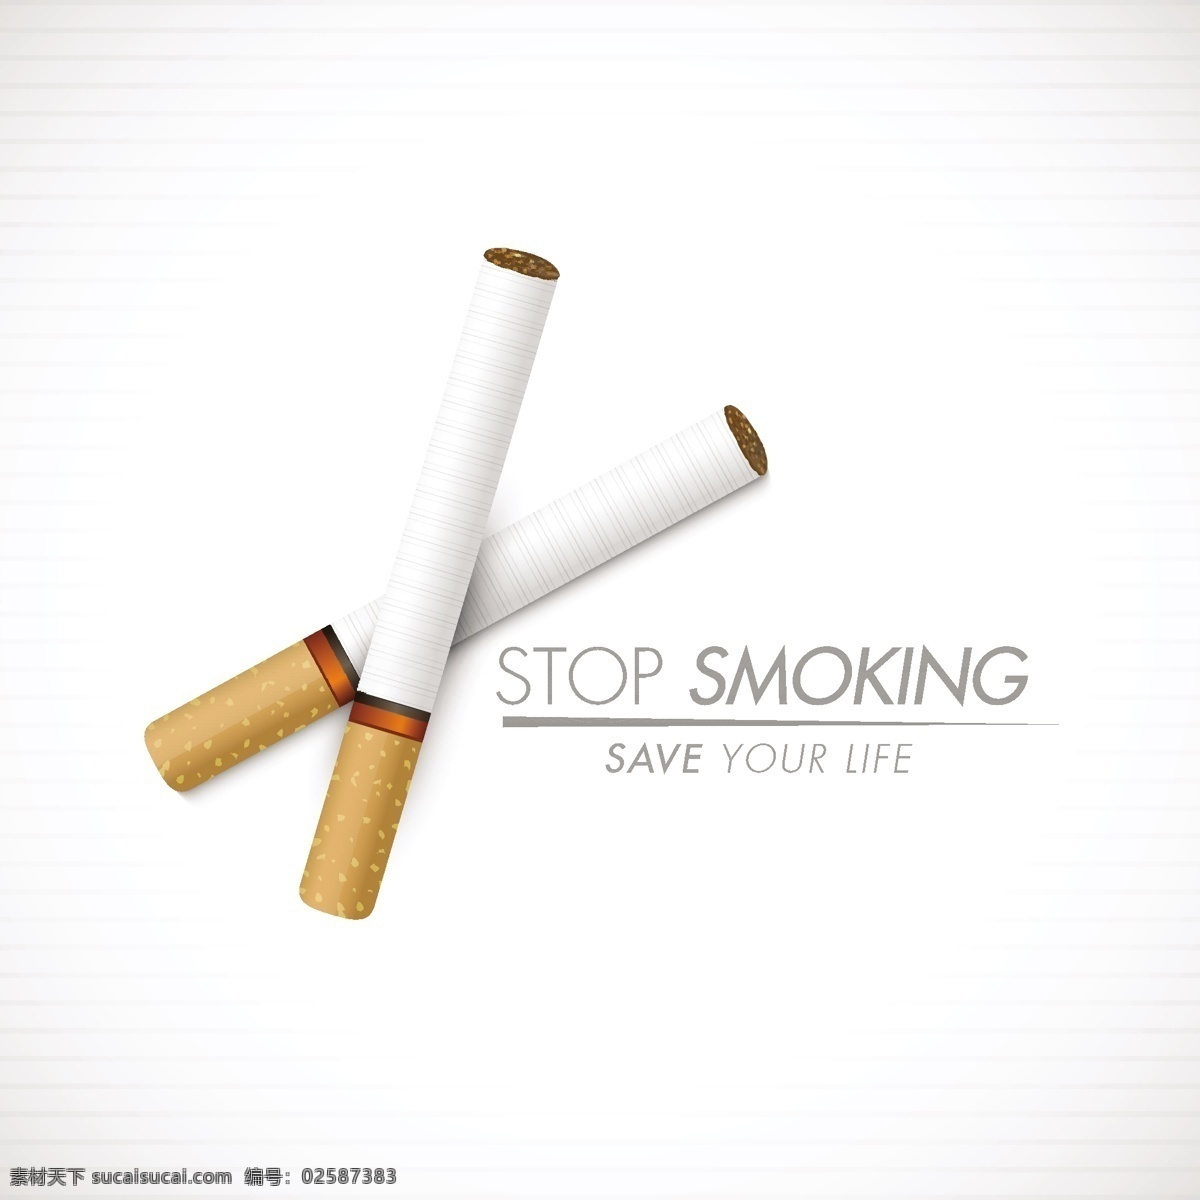 禁烟 海报 矢量 模板下载 禁烟海报 香烟 禁止吸烟 吸烟有害健康 禁烟公益广告 生活百科 矢量素材 白色